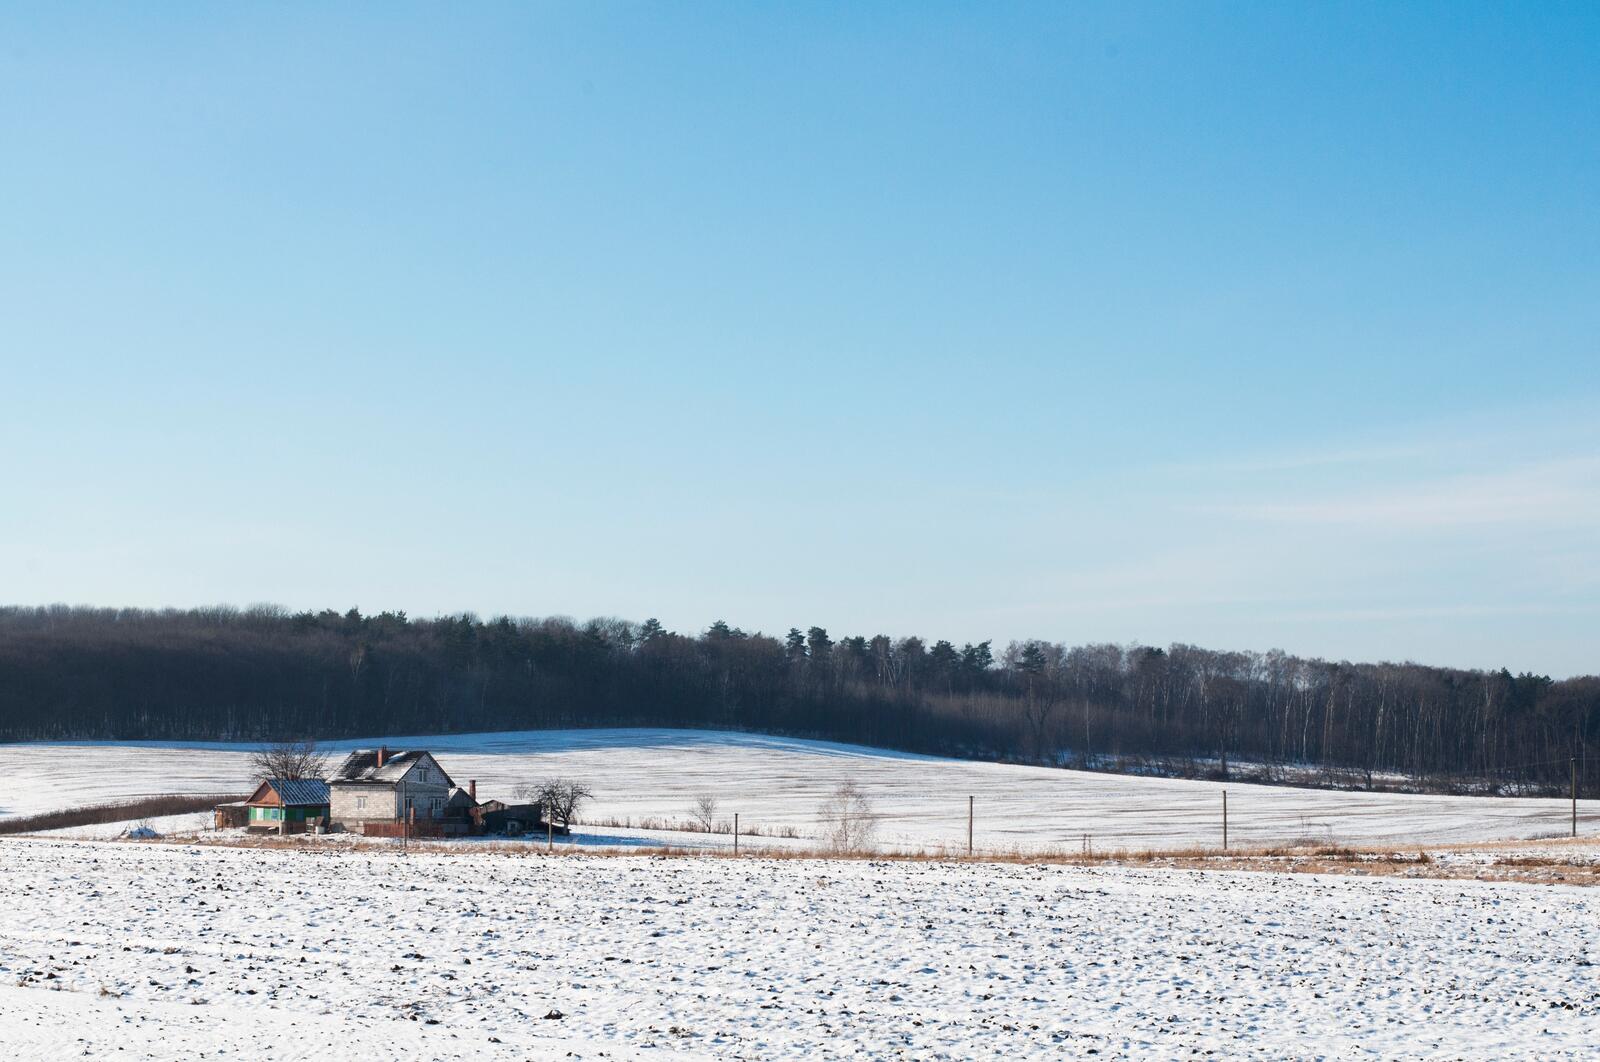 Бесплатное фото Снежная равнина с одиноким домом